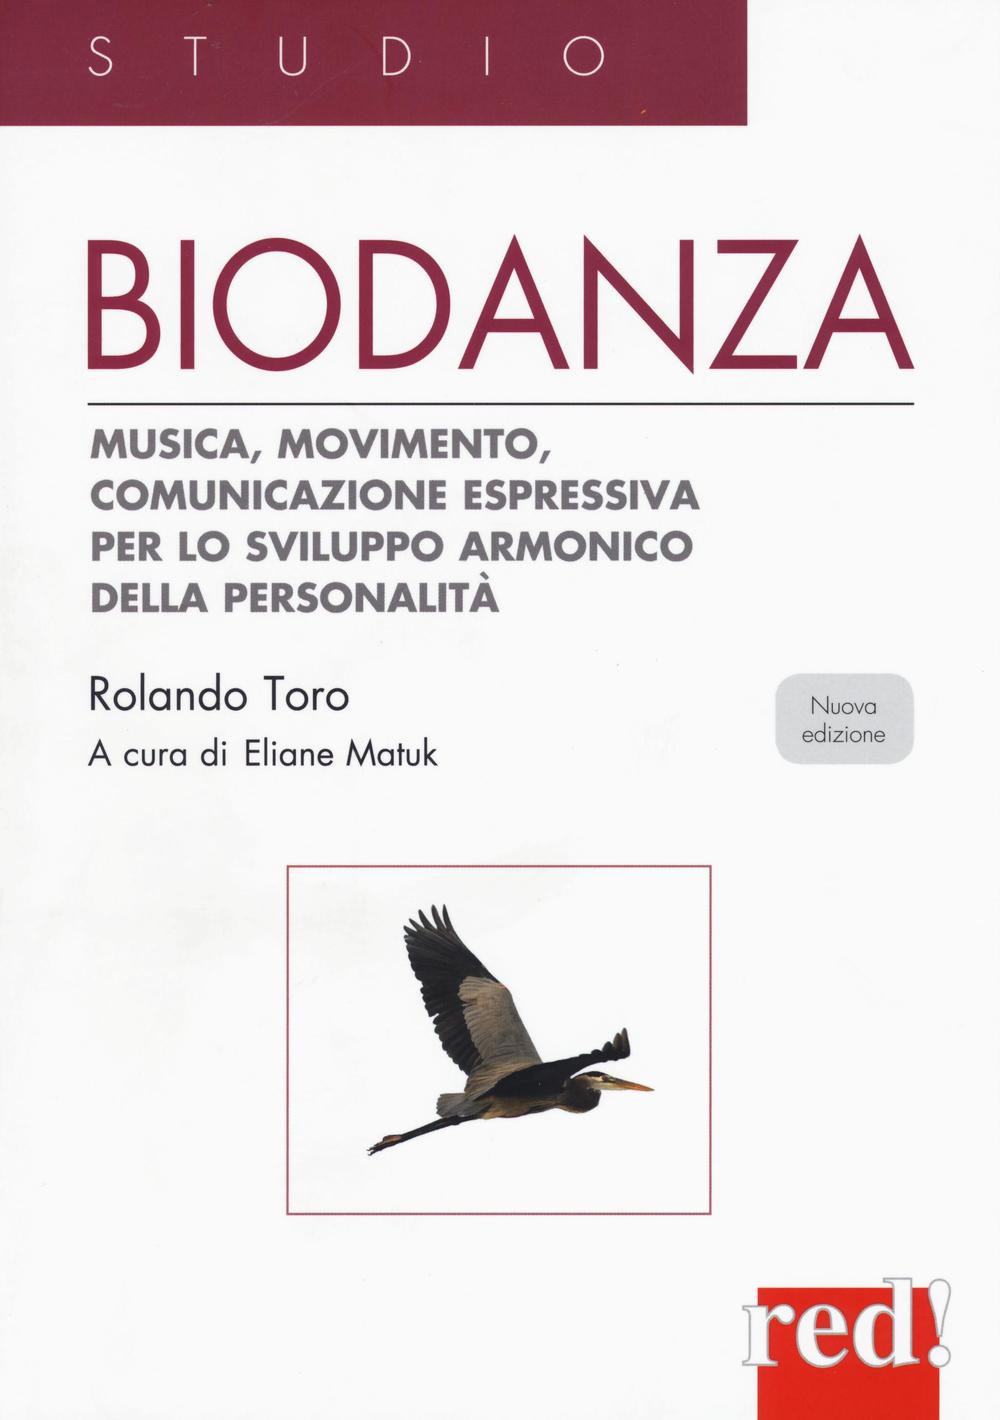 Knjiga Biodanza. Musica, movimento, comunicazione espressiva per lo sviluppo armonico della personalità Rolando Toro